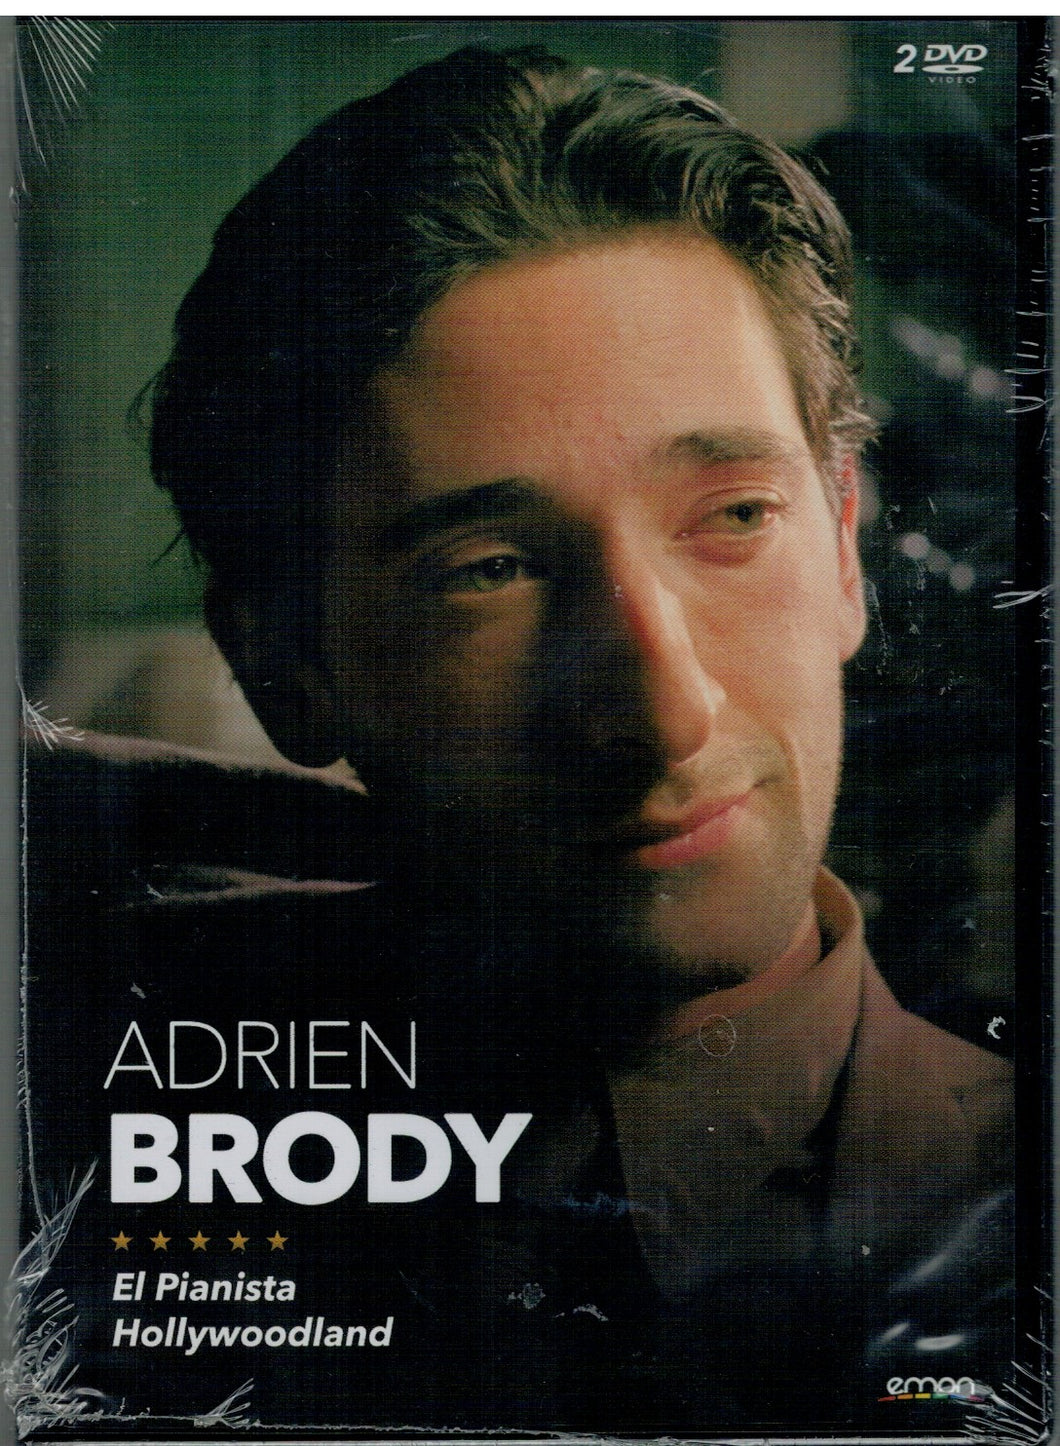 Pack Adrien Brody (El pianista - Hollywoodland) (2 DVD Nuevo)